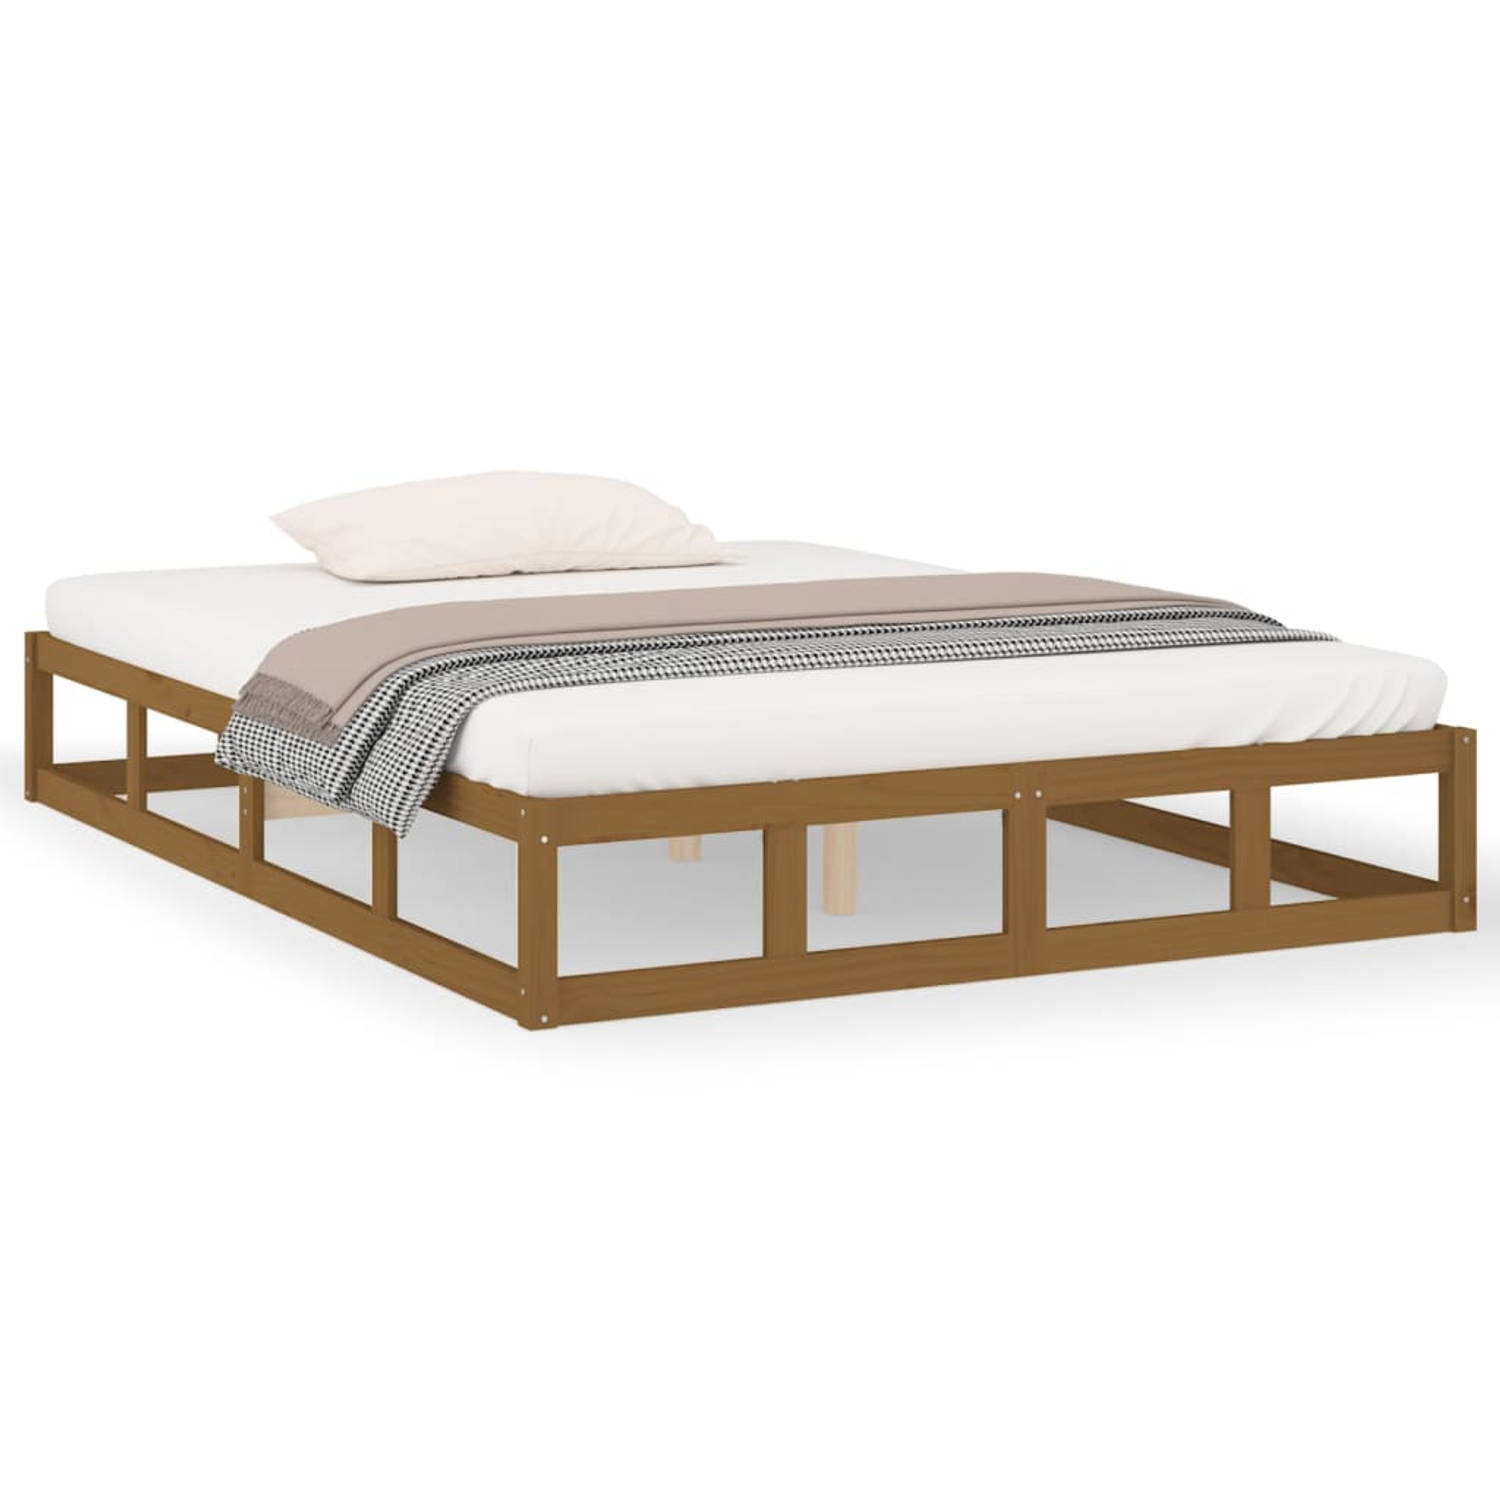 The Living Store Bedframe massief hout honingbruin 120x200 cm - Bedframe - Bedframes - Bed - Bedbodem - Ledikant - Bed Frame - Massief Houten Bedframe - Slaapmeubel - Tweepersoonsb